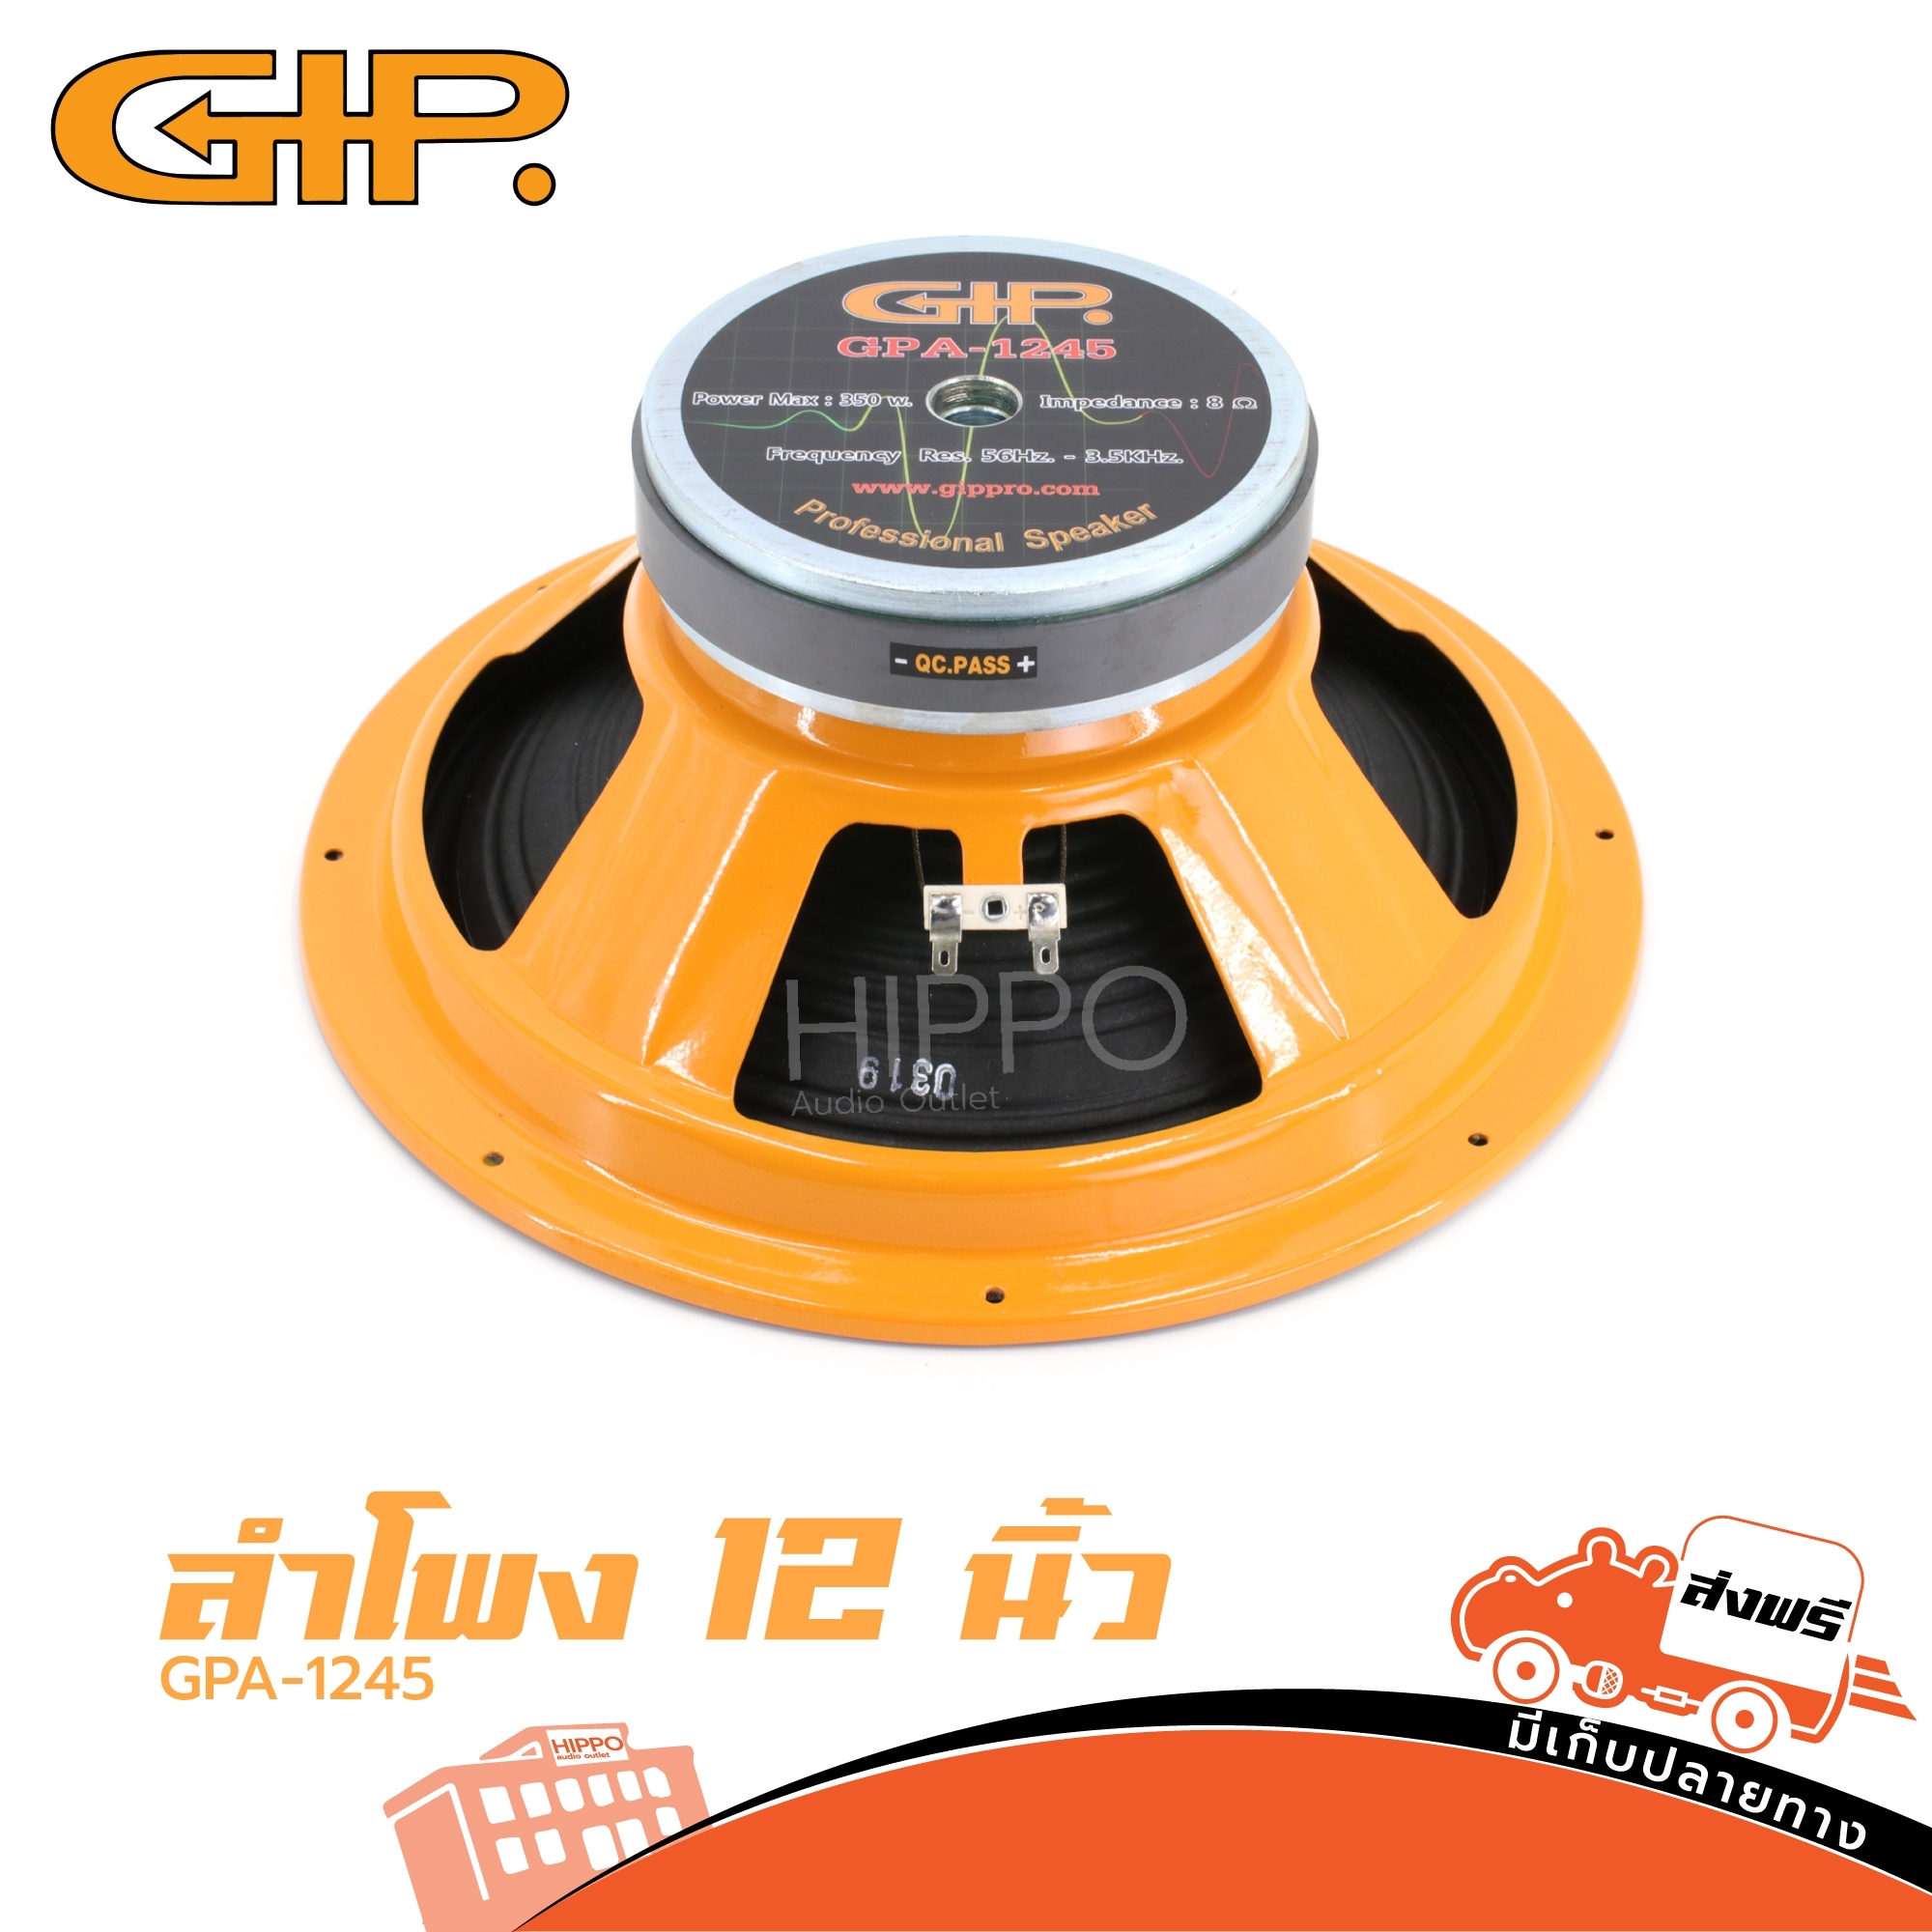 ดอกลำโพง GIP รุ่น GPA 1245 ดอกลำโพง 12 นิ้ว (ราคาต่อ 1 ดอก) 350วัตต์ 8โอห์ม โครงปั๊ม ลำโพง 12 นิ้ว 1245 GPA 1245 แม่เหล็ก 145 มม. ฮิปโป ออดิโอ Hippo Audio